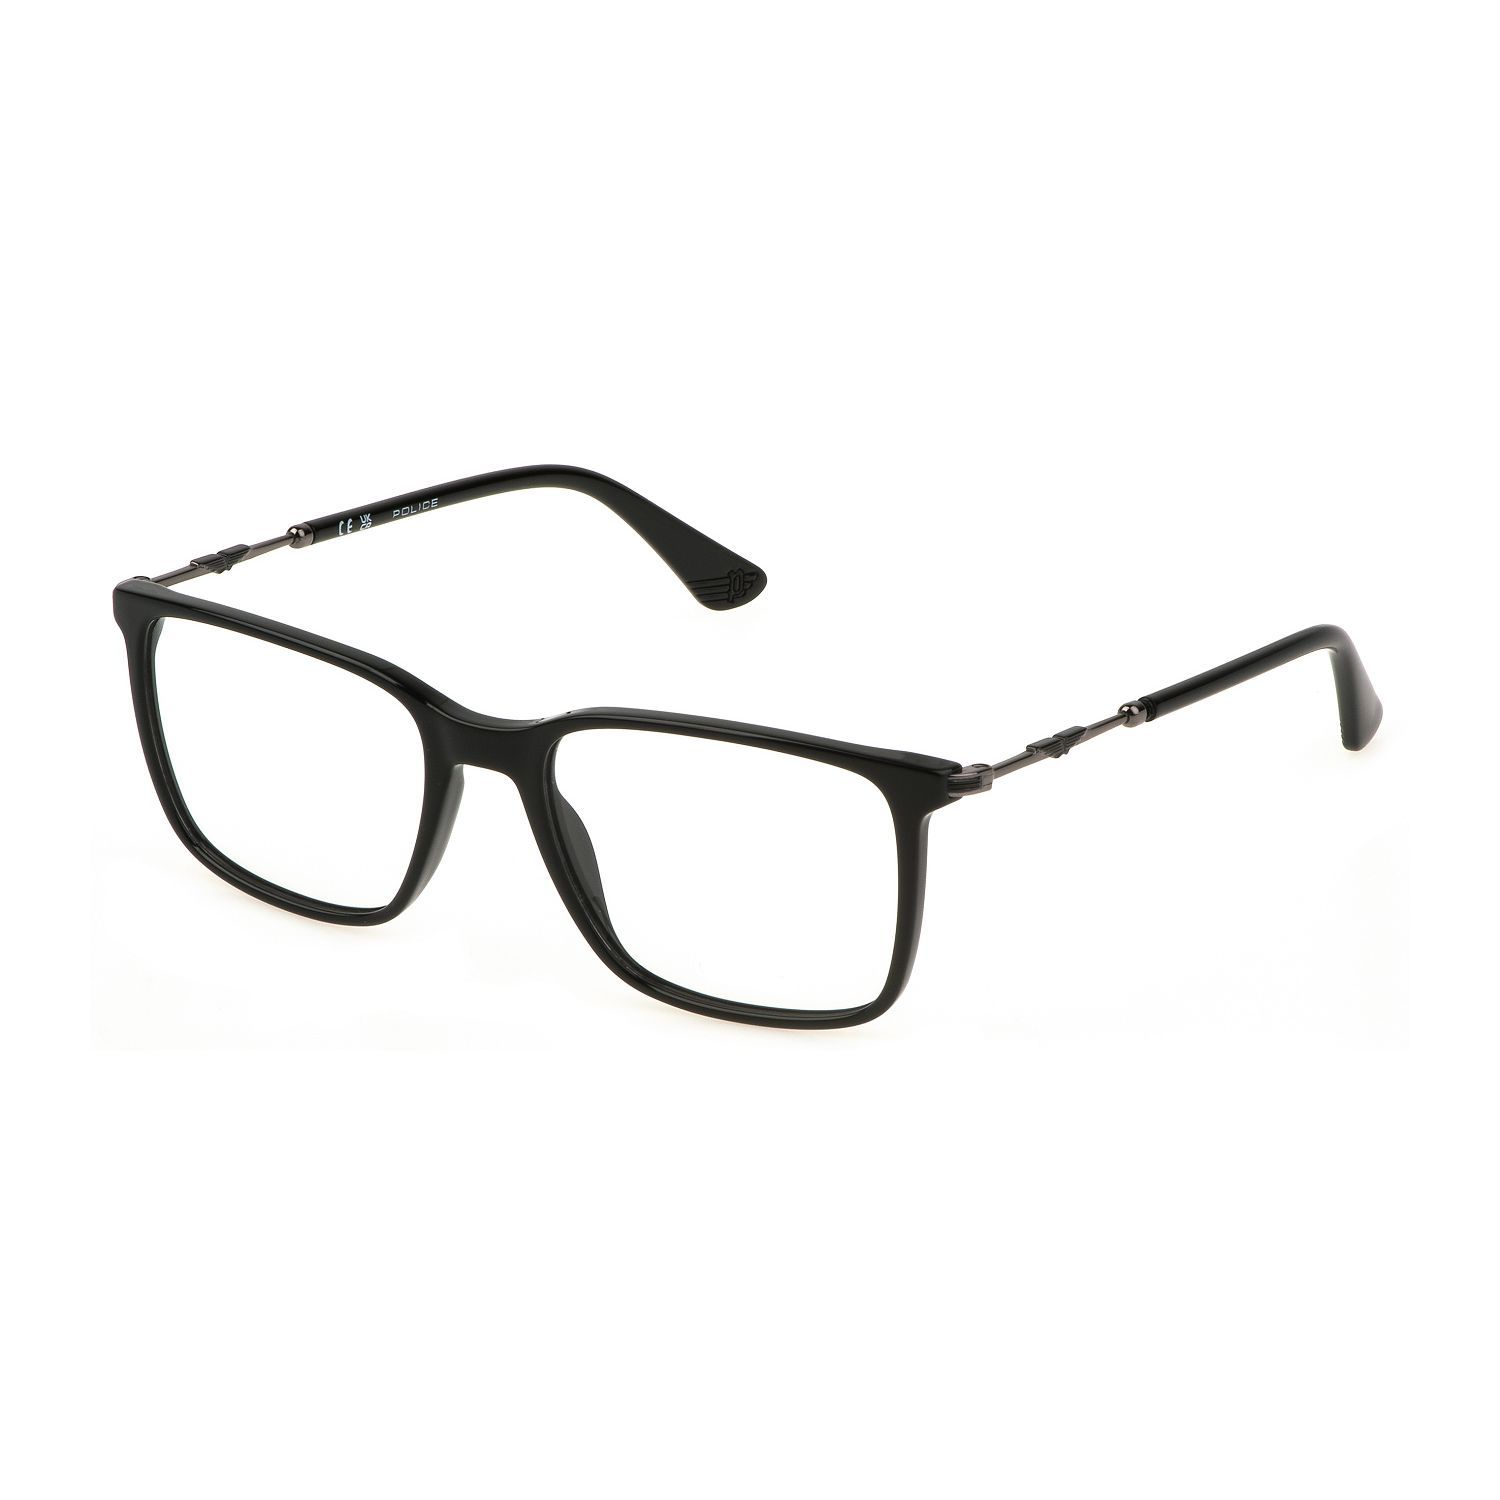 VK133 Square Eyeglasses 0Z42 - size 51